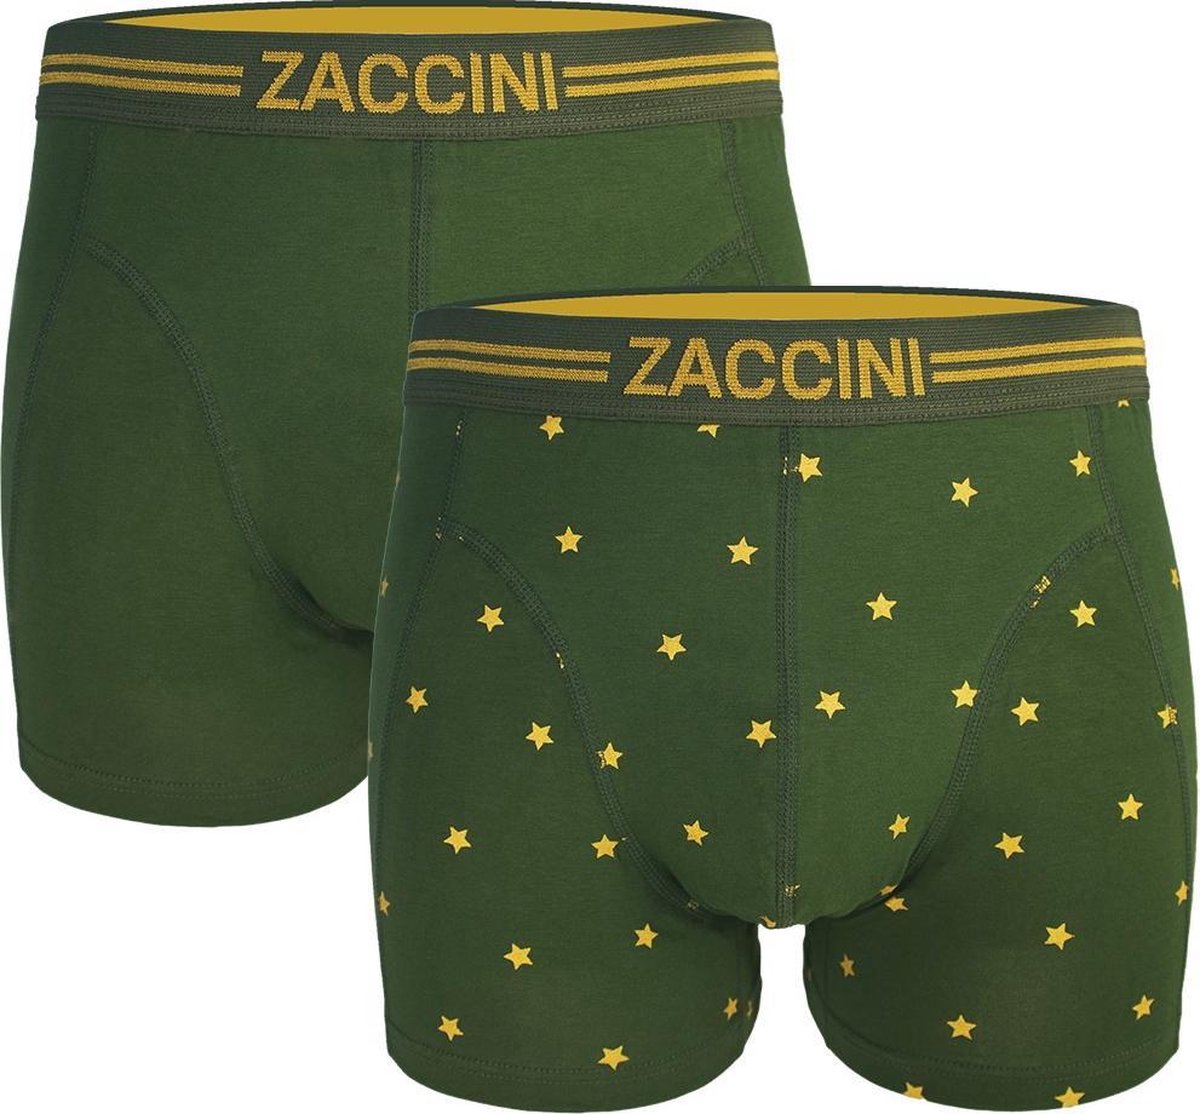 Zaccini - Heren Boxershorts - 2 pack - Groen Geel